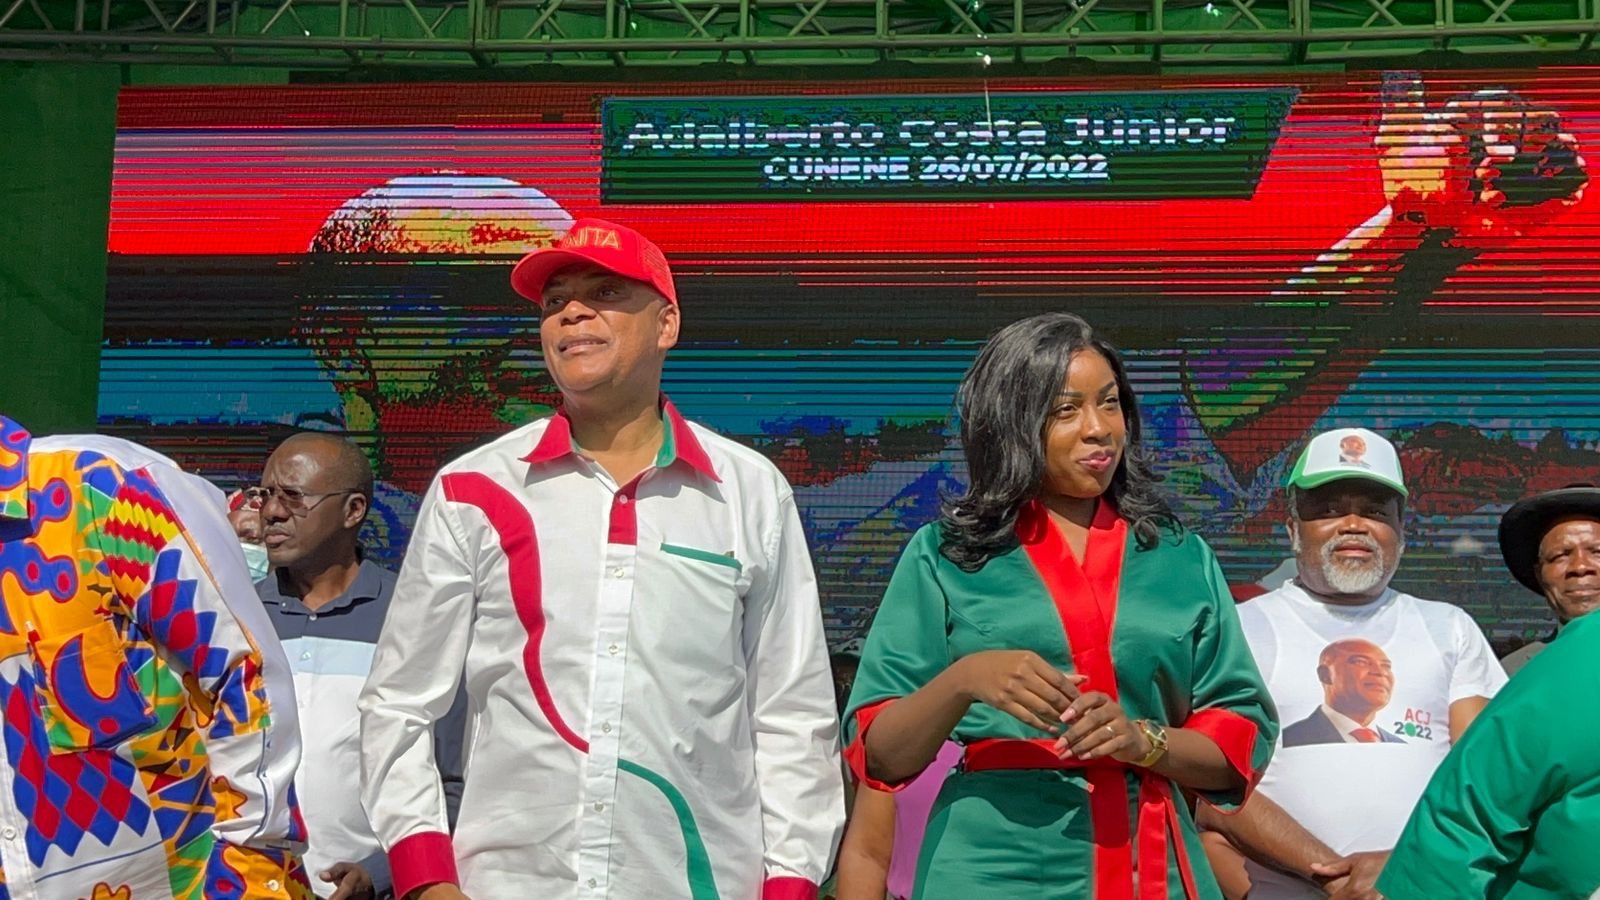 Adalberto Costa Júnior e a mulher Slavia Costa, Justino Pinto de Andrade, do Bloco Democrático. Ondjiva. Comício da UNITA no Cunene, 26 de julho de 2022